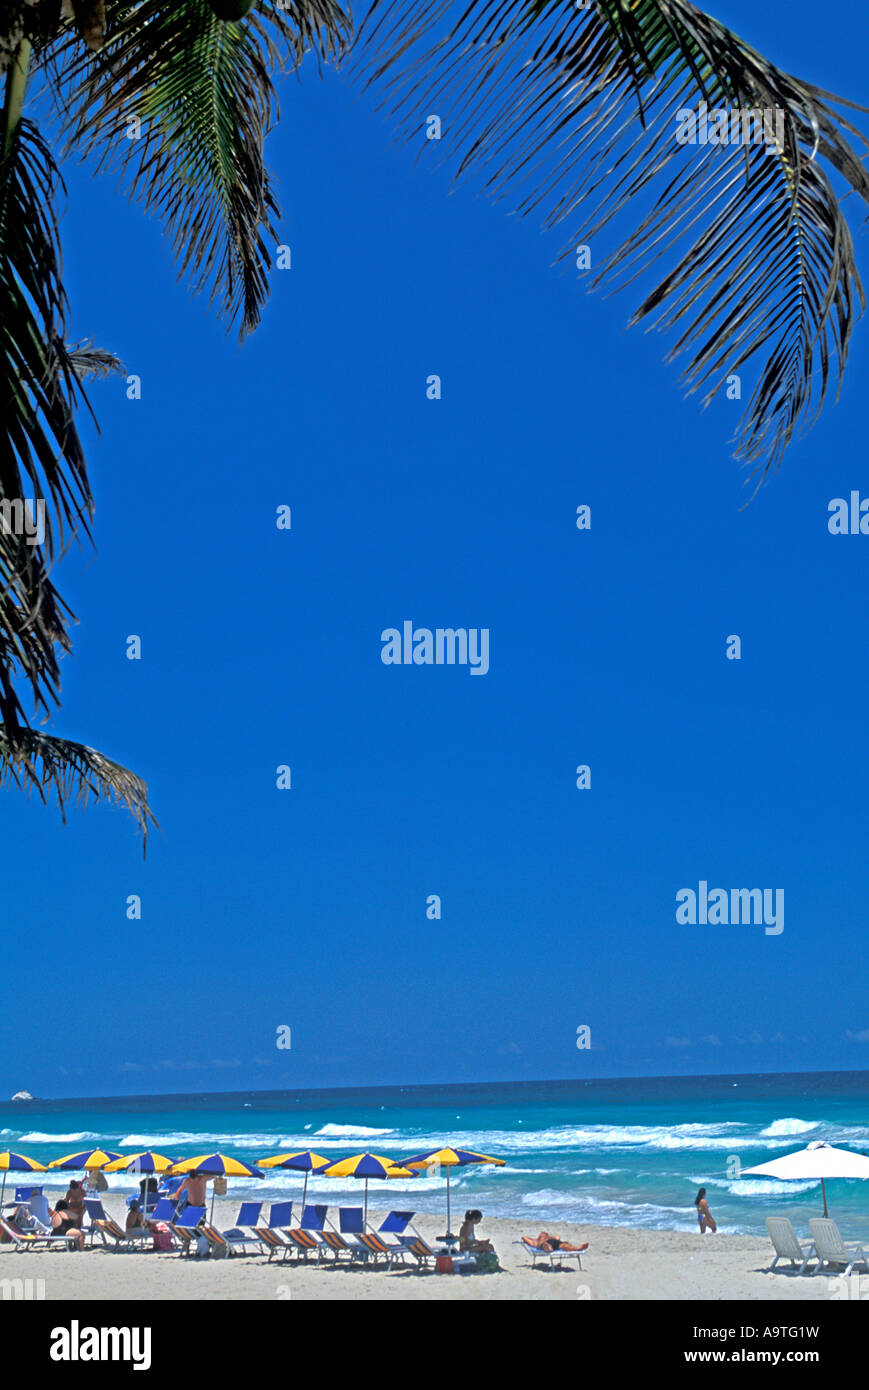 L'île de Isla Margarita Venezuela Playa El Aqua chaises de plage touristes océan soleil aire touristique populaire en Amérique du Sud Banque D'Images